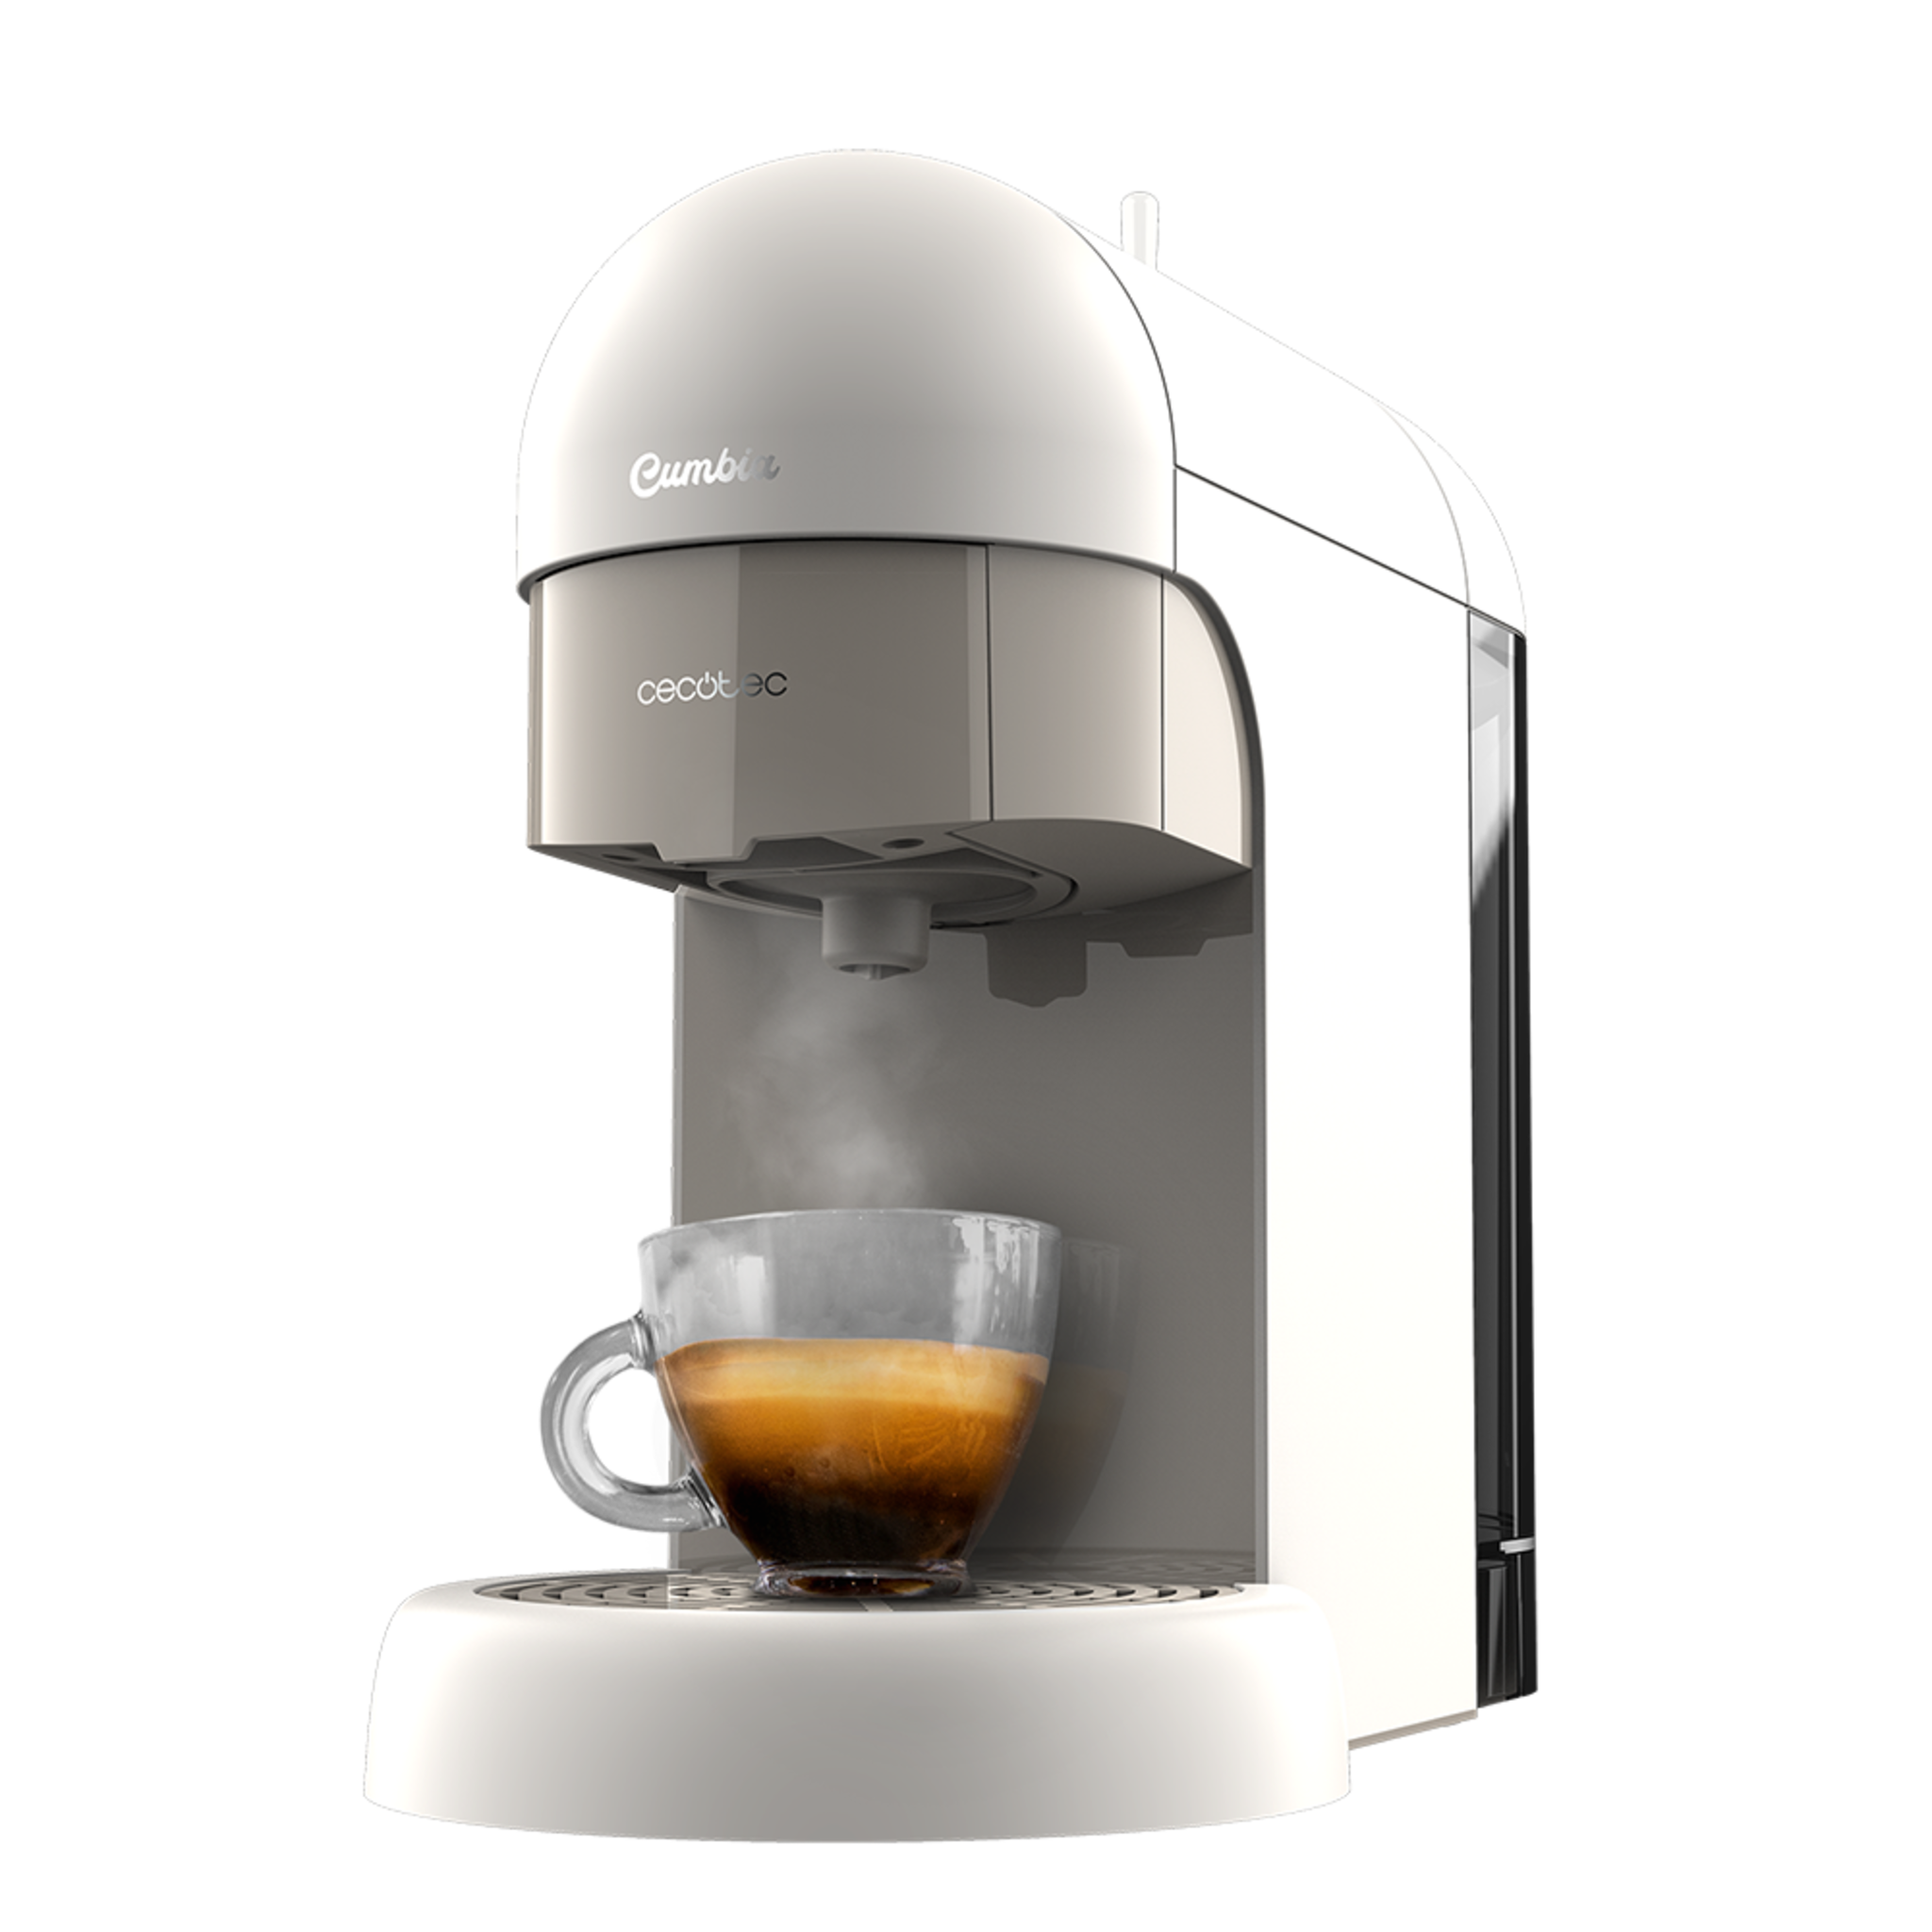 Machine à café expresso Cumbia Capricciosa White. Pression de 19 bars, convient pour le café moulu et les dosettes ESE, réservoir d'eau de 600 ml et filtre qui convient pour le lave-vaisselle